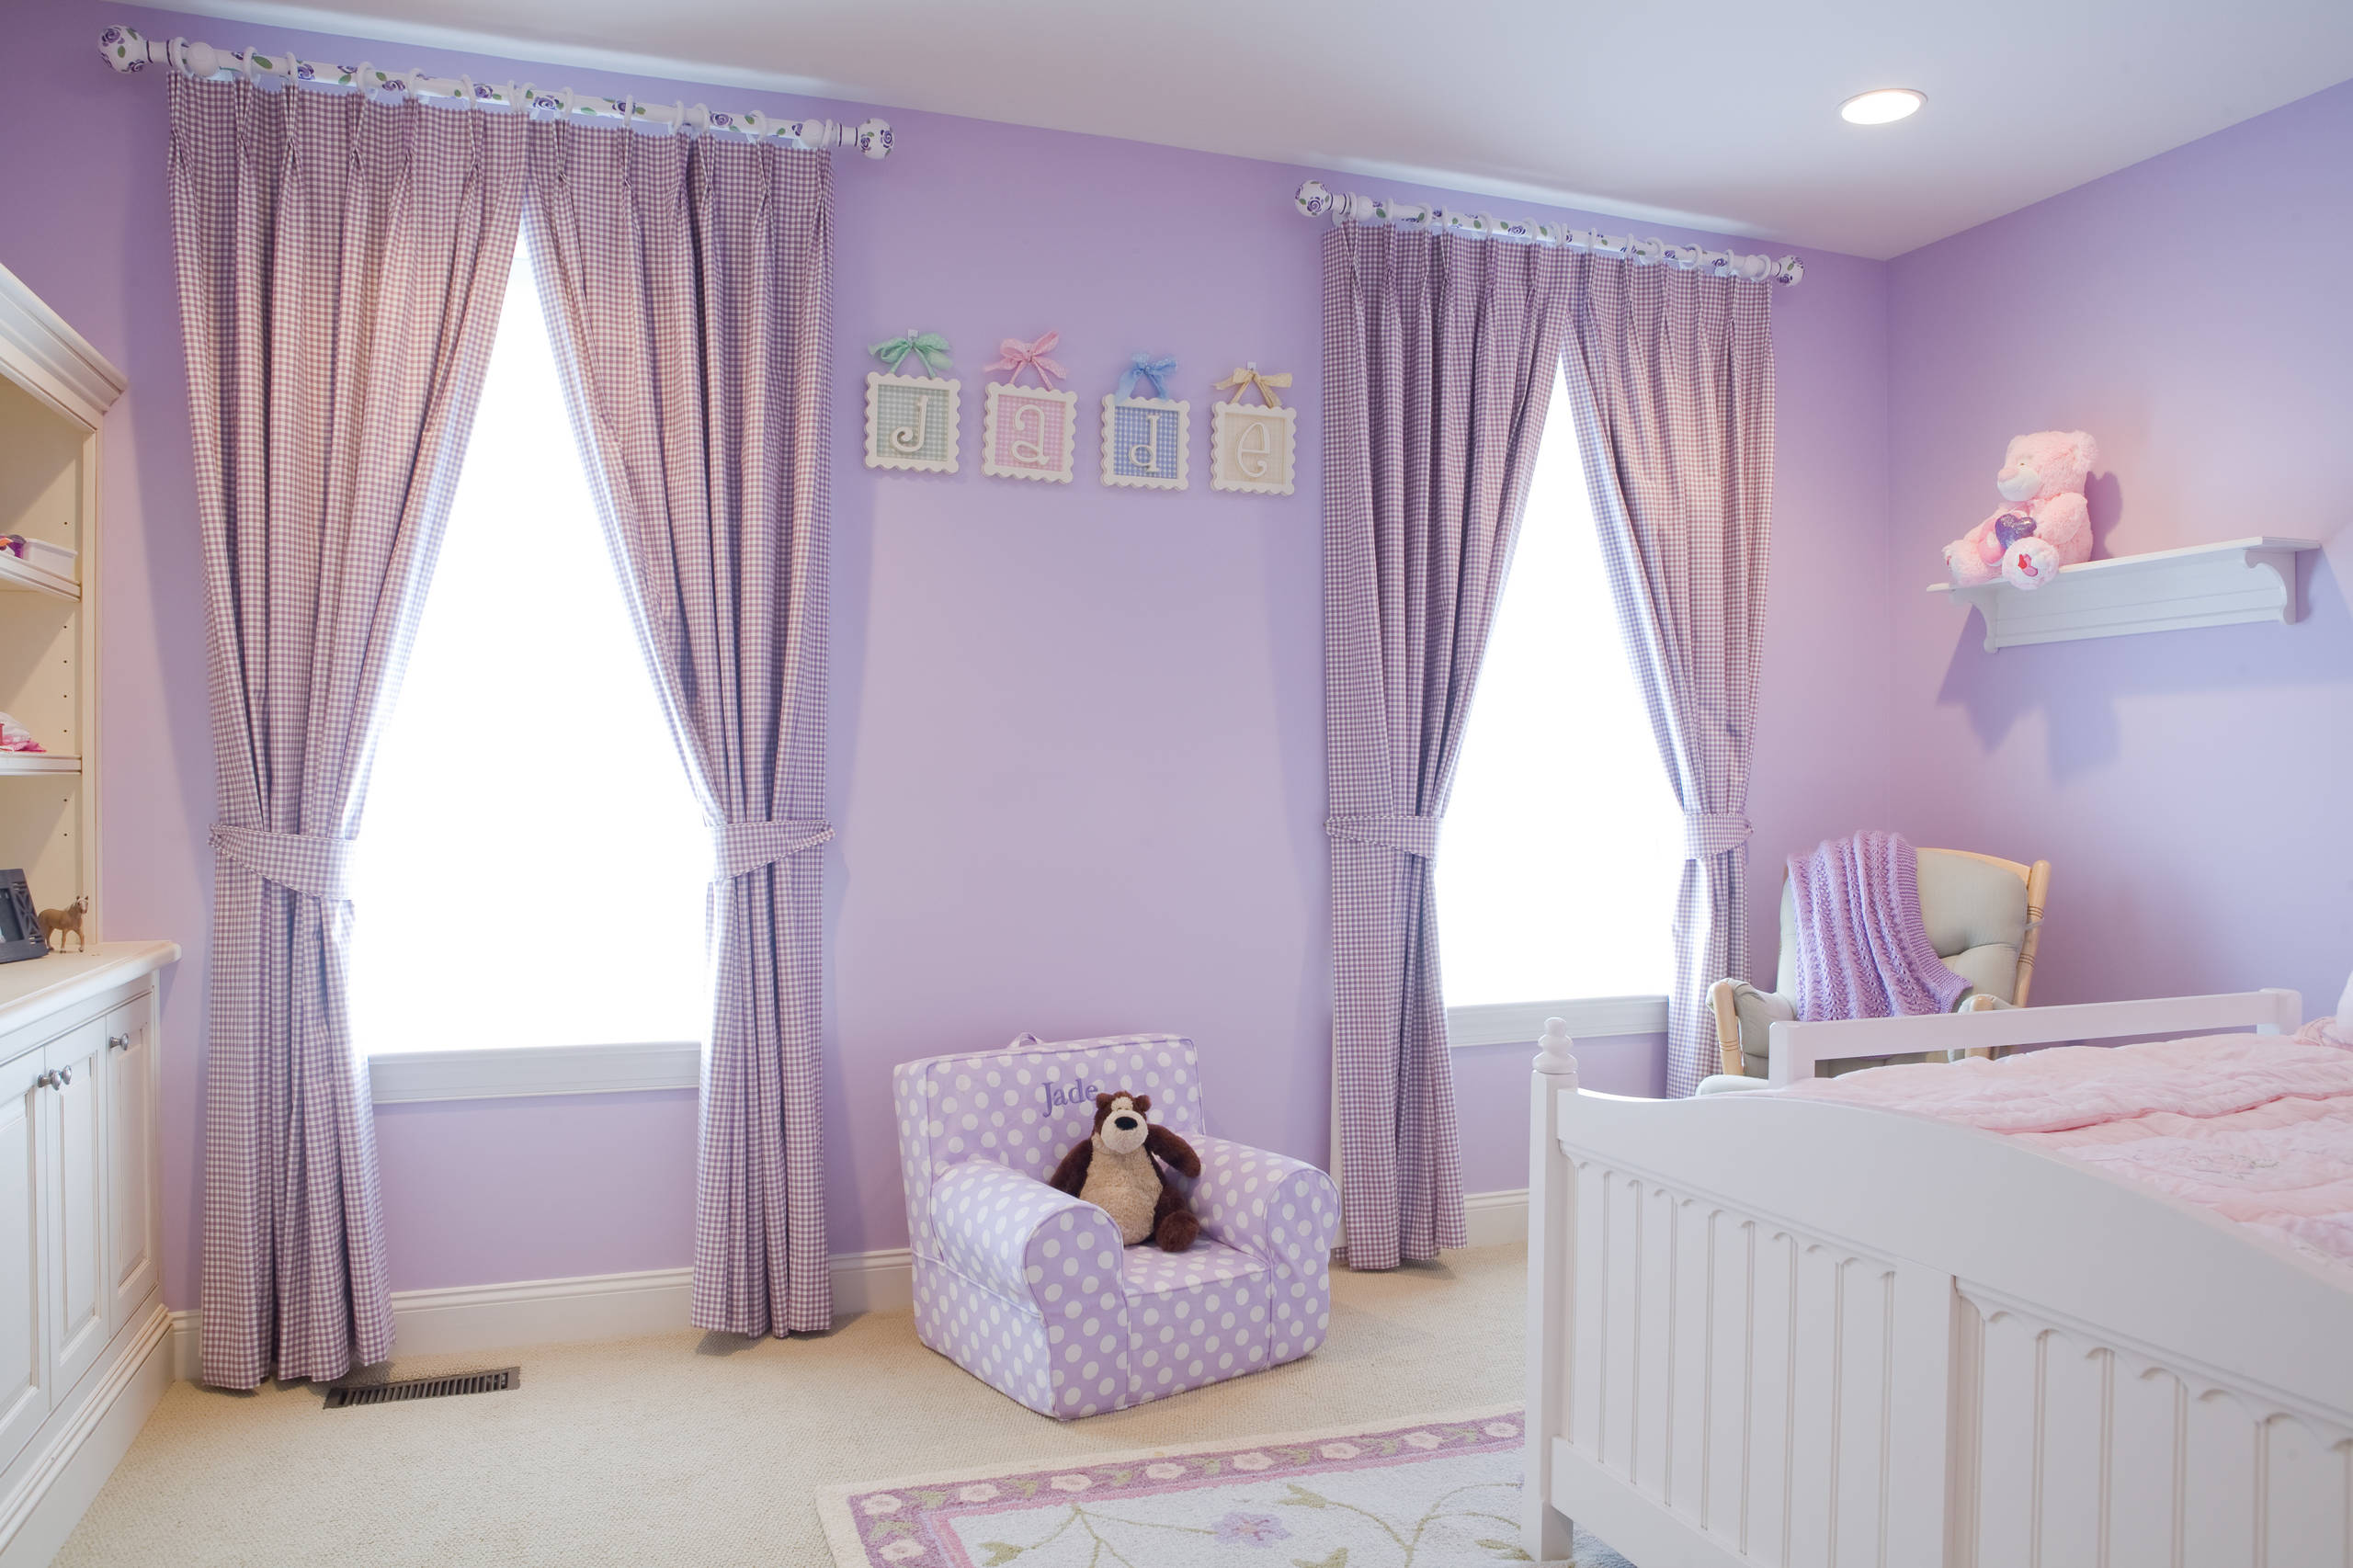 Thiết kế phòng ngủ màu tím pastel dễ thương cho bé gái